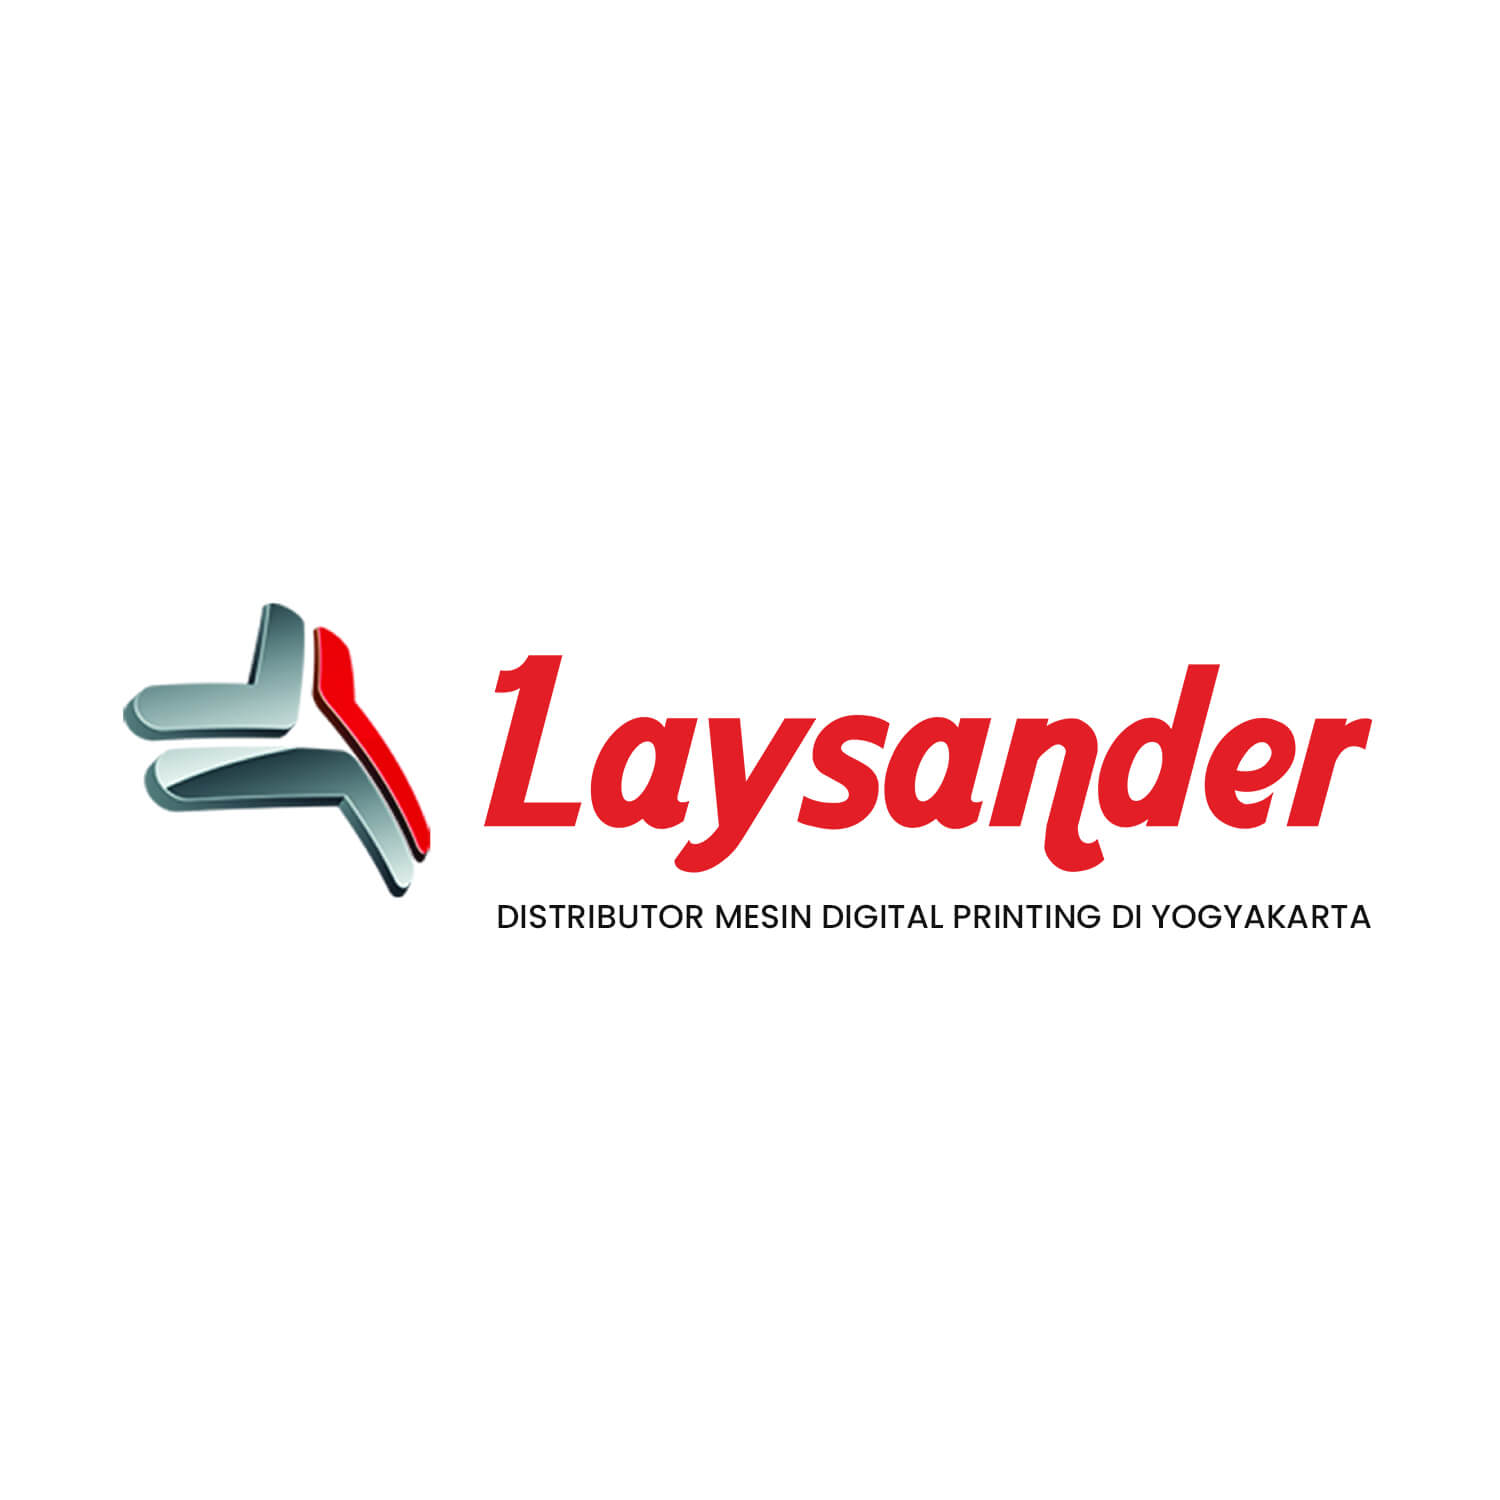 Laysander: Distributor Mesin Digital Printing Di Yogyakarta